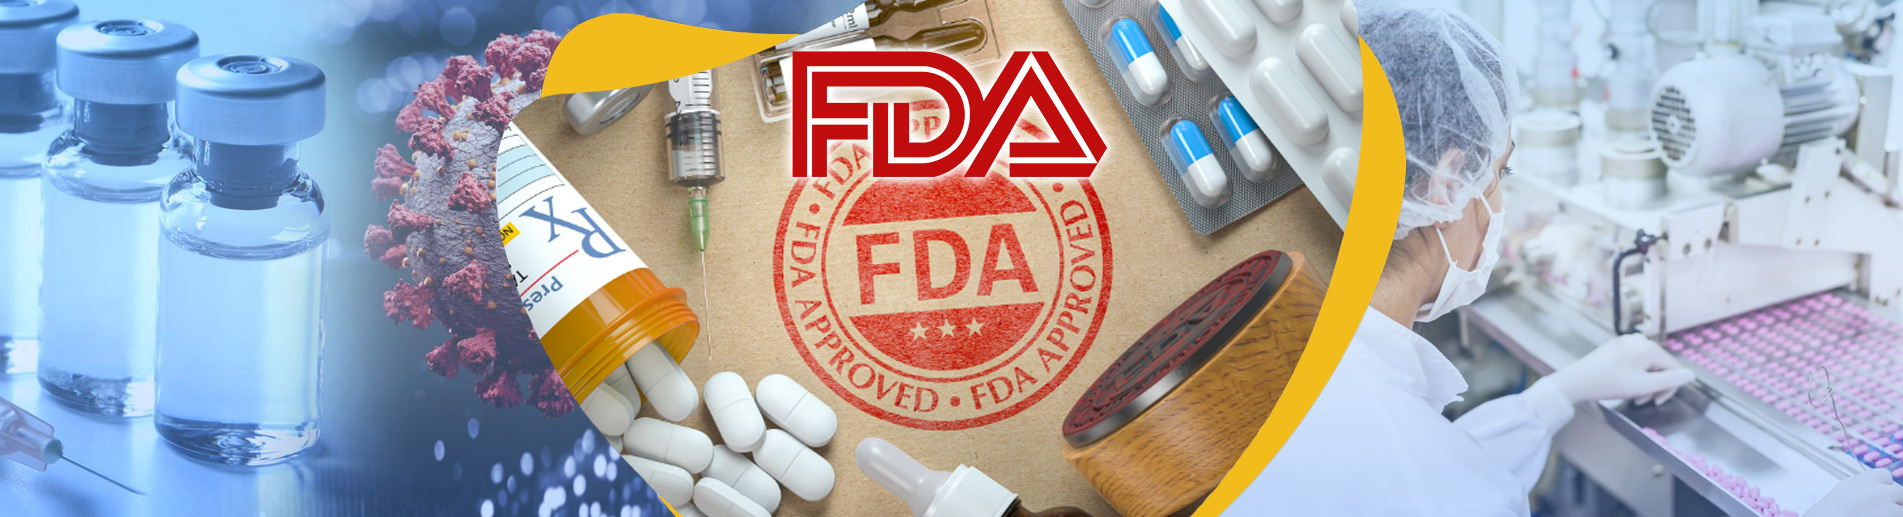 FDA ONAYI Amerika Gıda İlaç Medikal Sertifikası